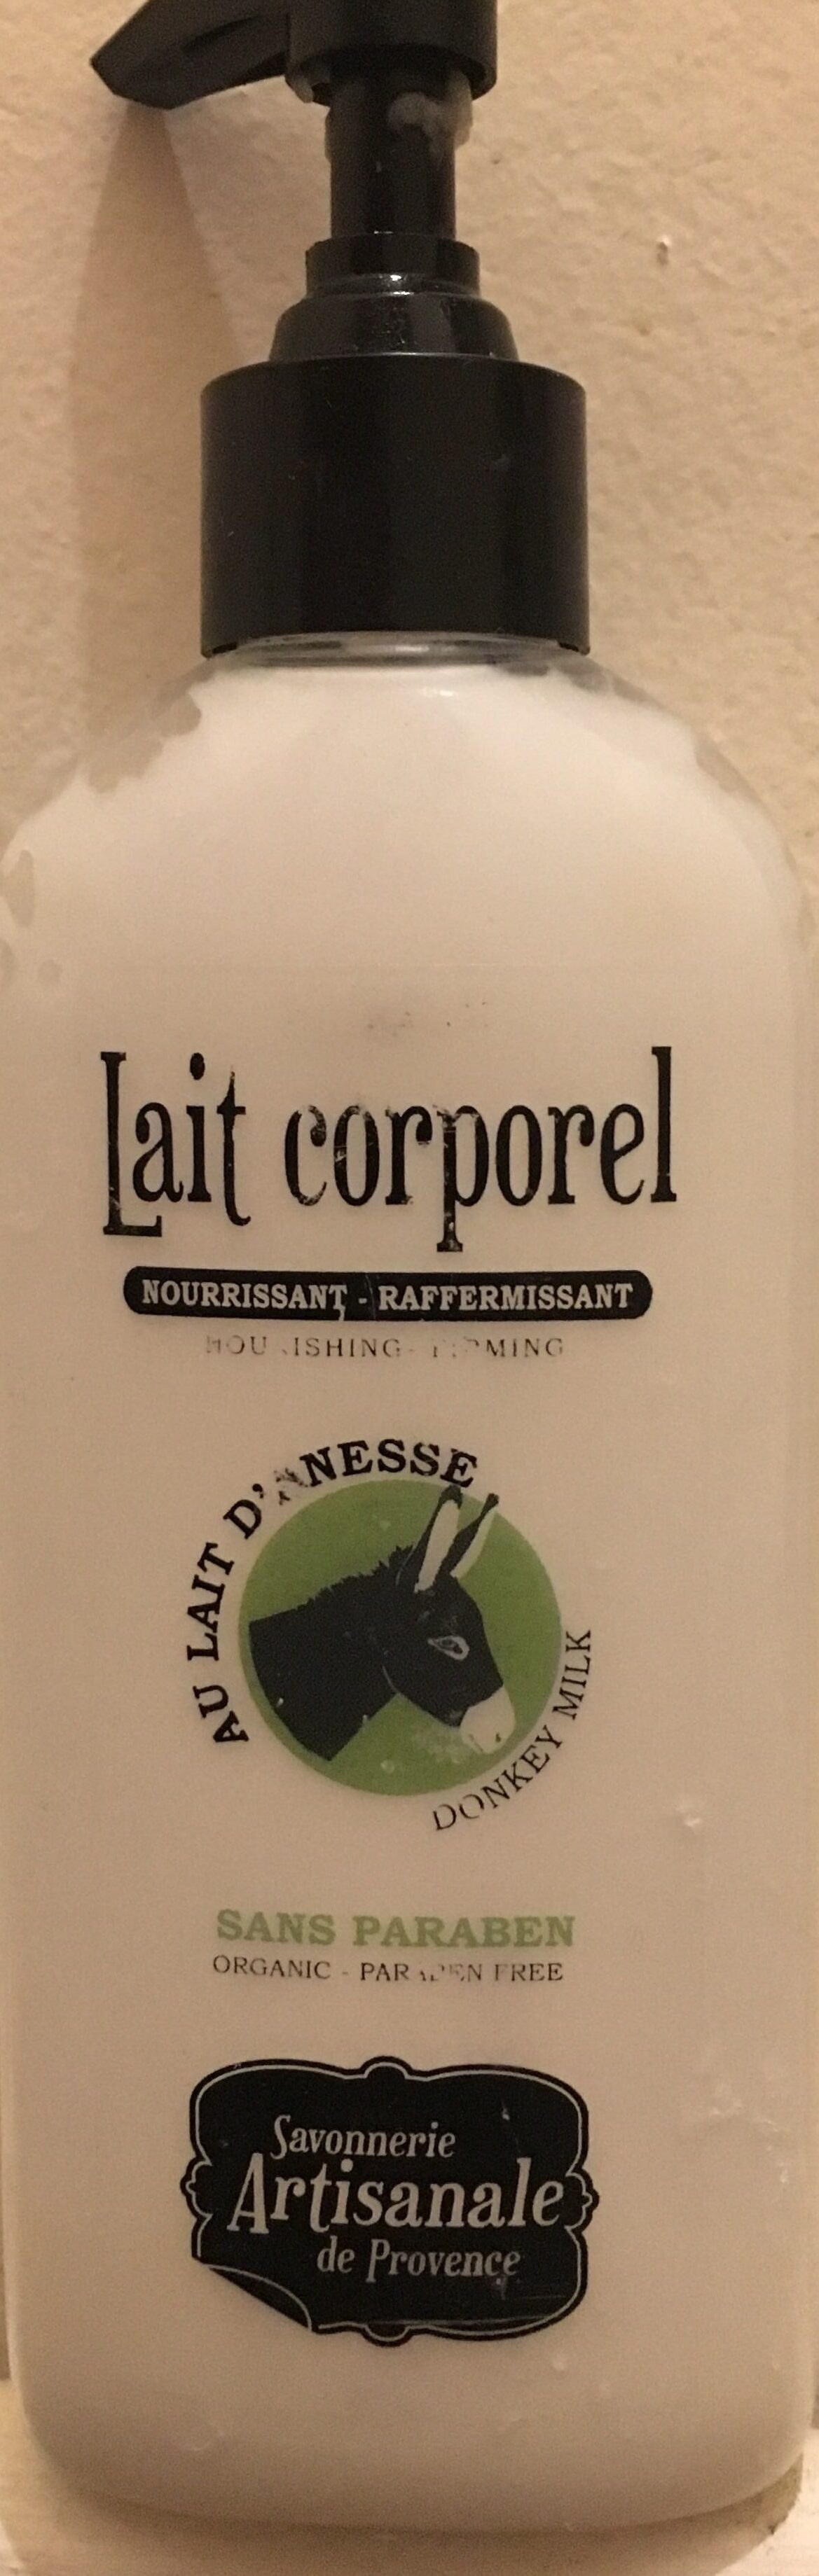 Lait corporel - Product - fr